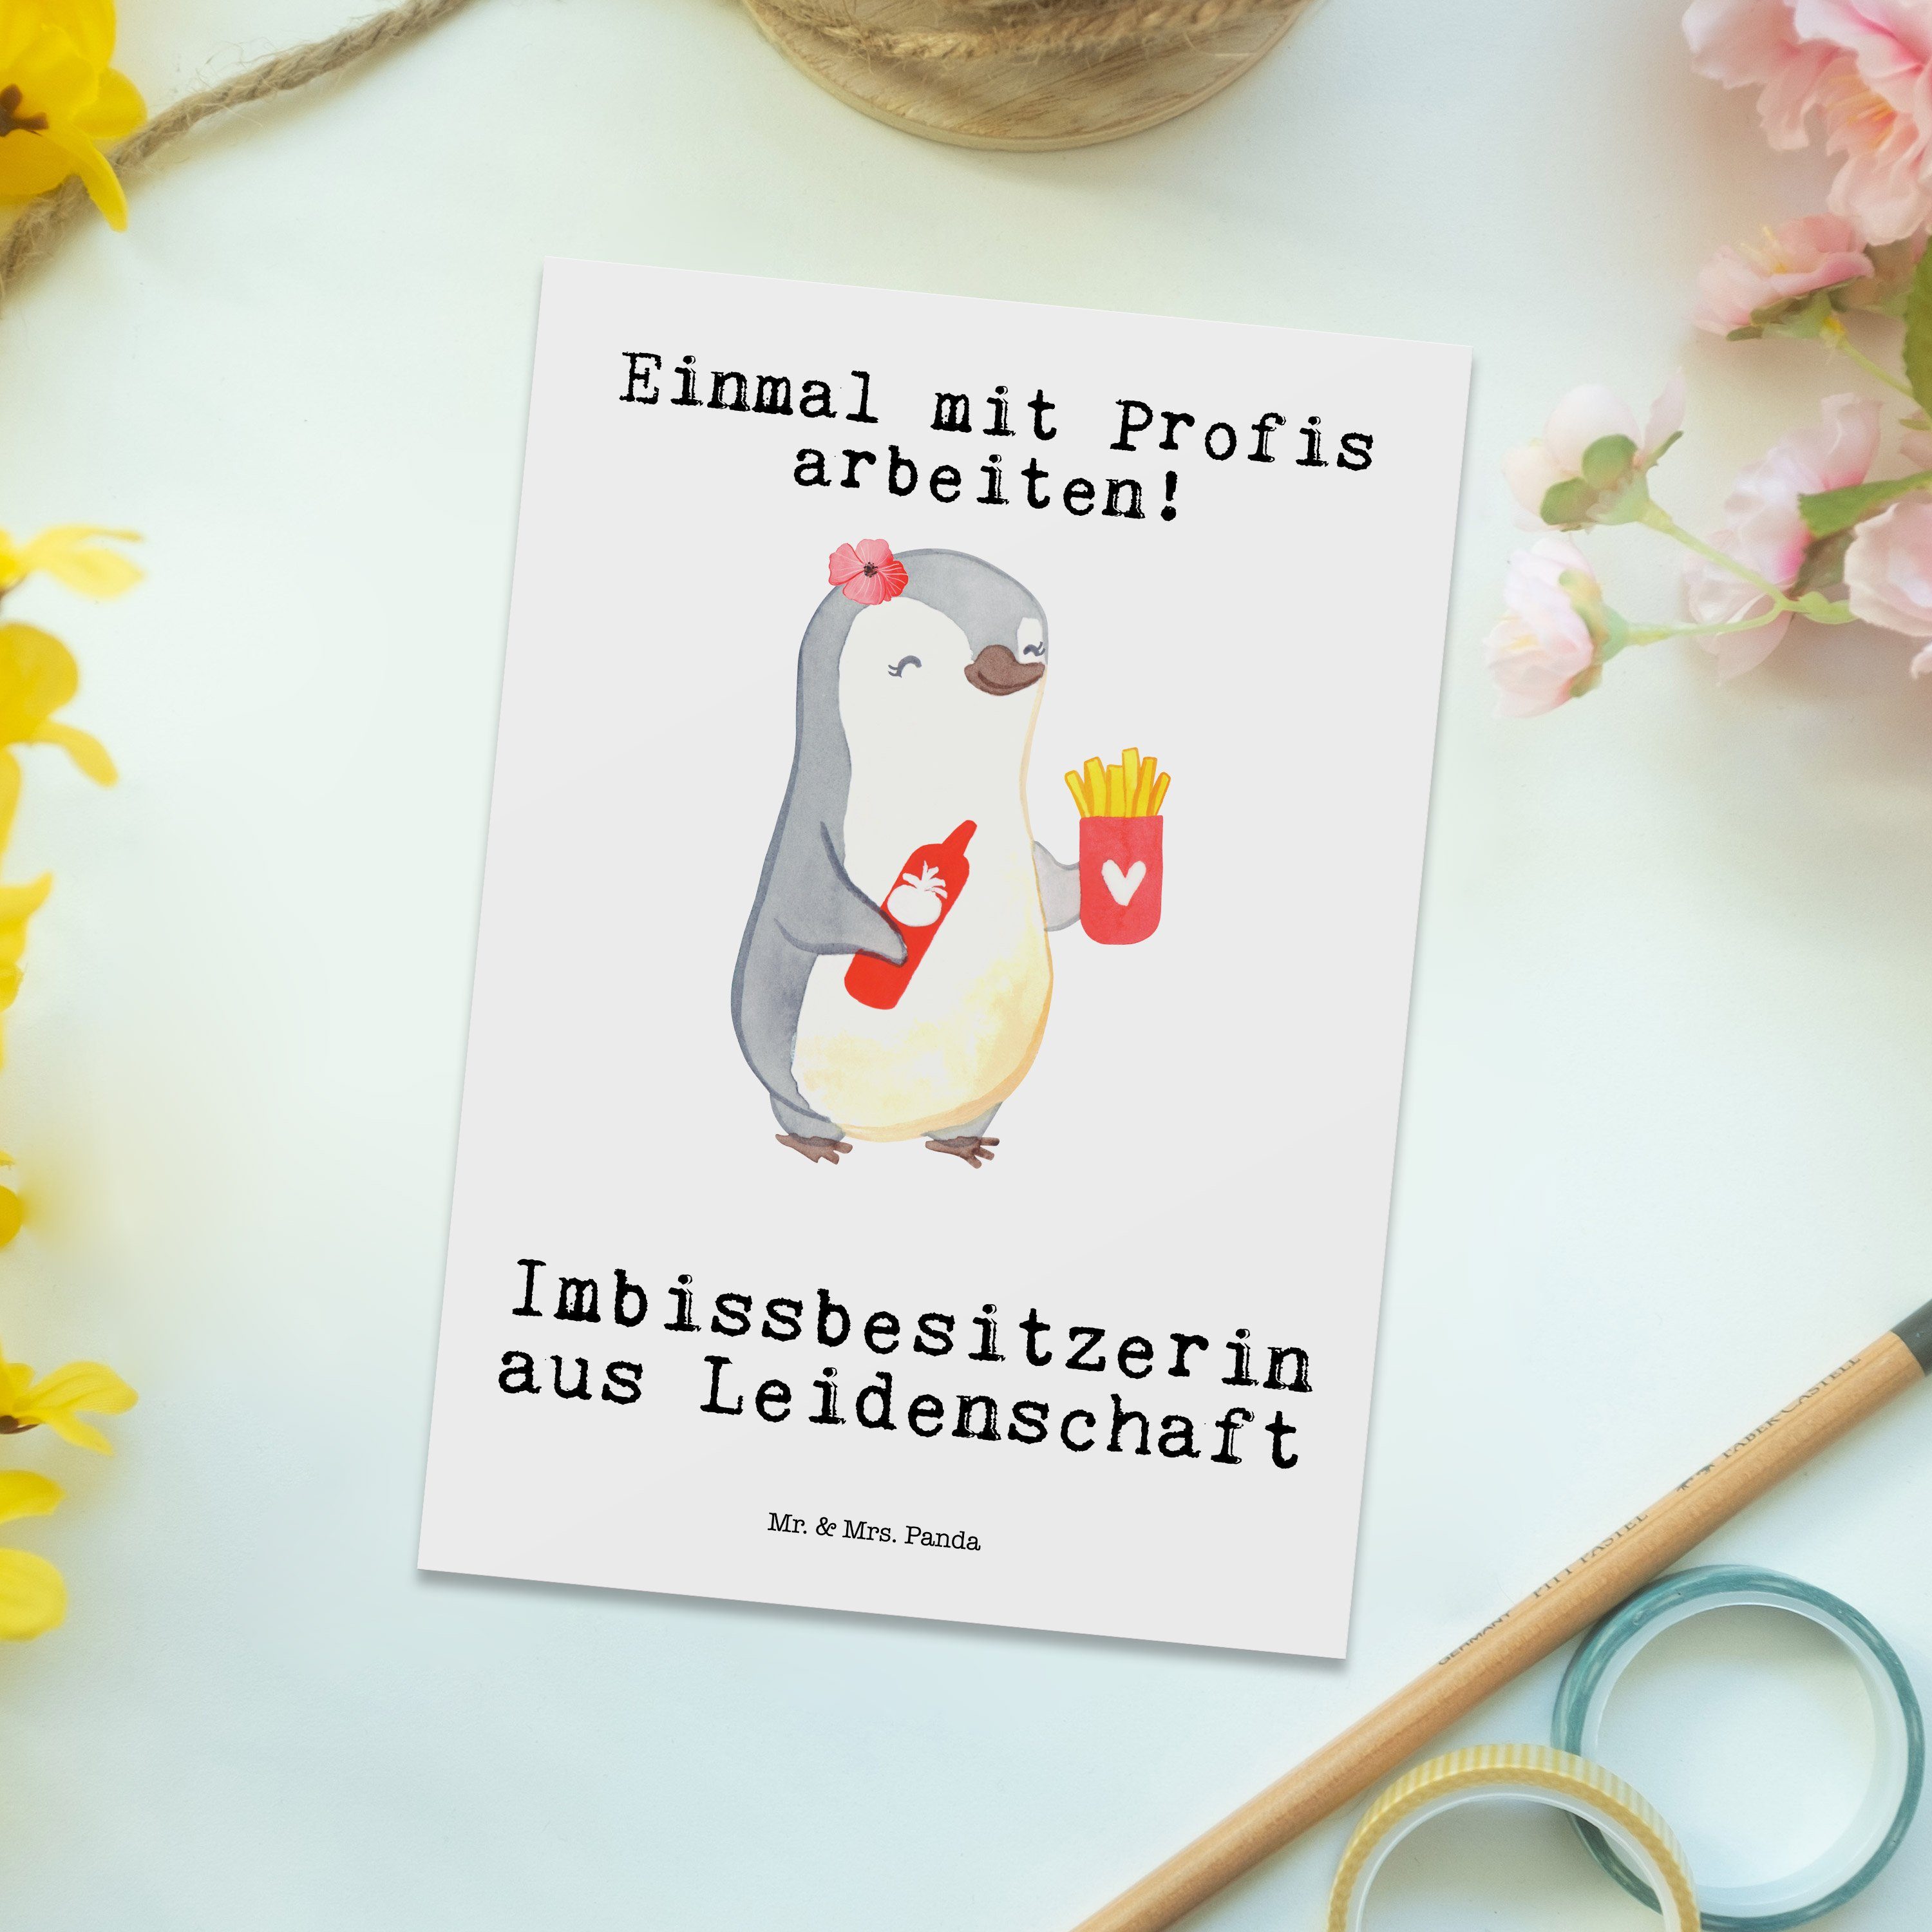 Mr. & Panda Leidenschaft Pommesverkäuferi - Geschenk, Mrs. Weiß Postkarte aus Imbissbesitzerin 